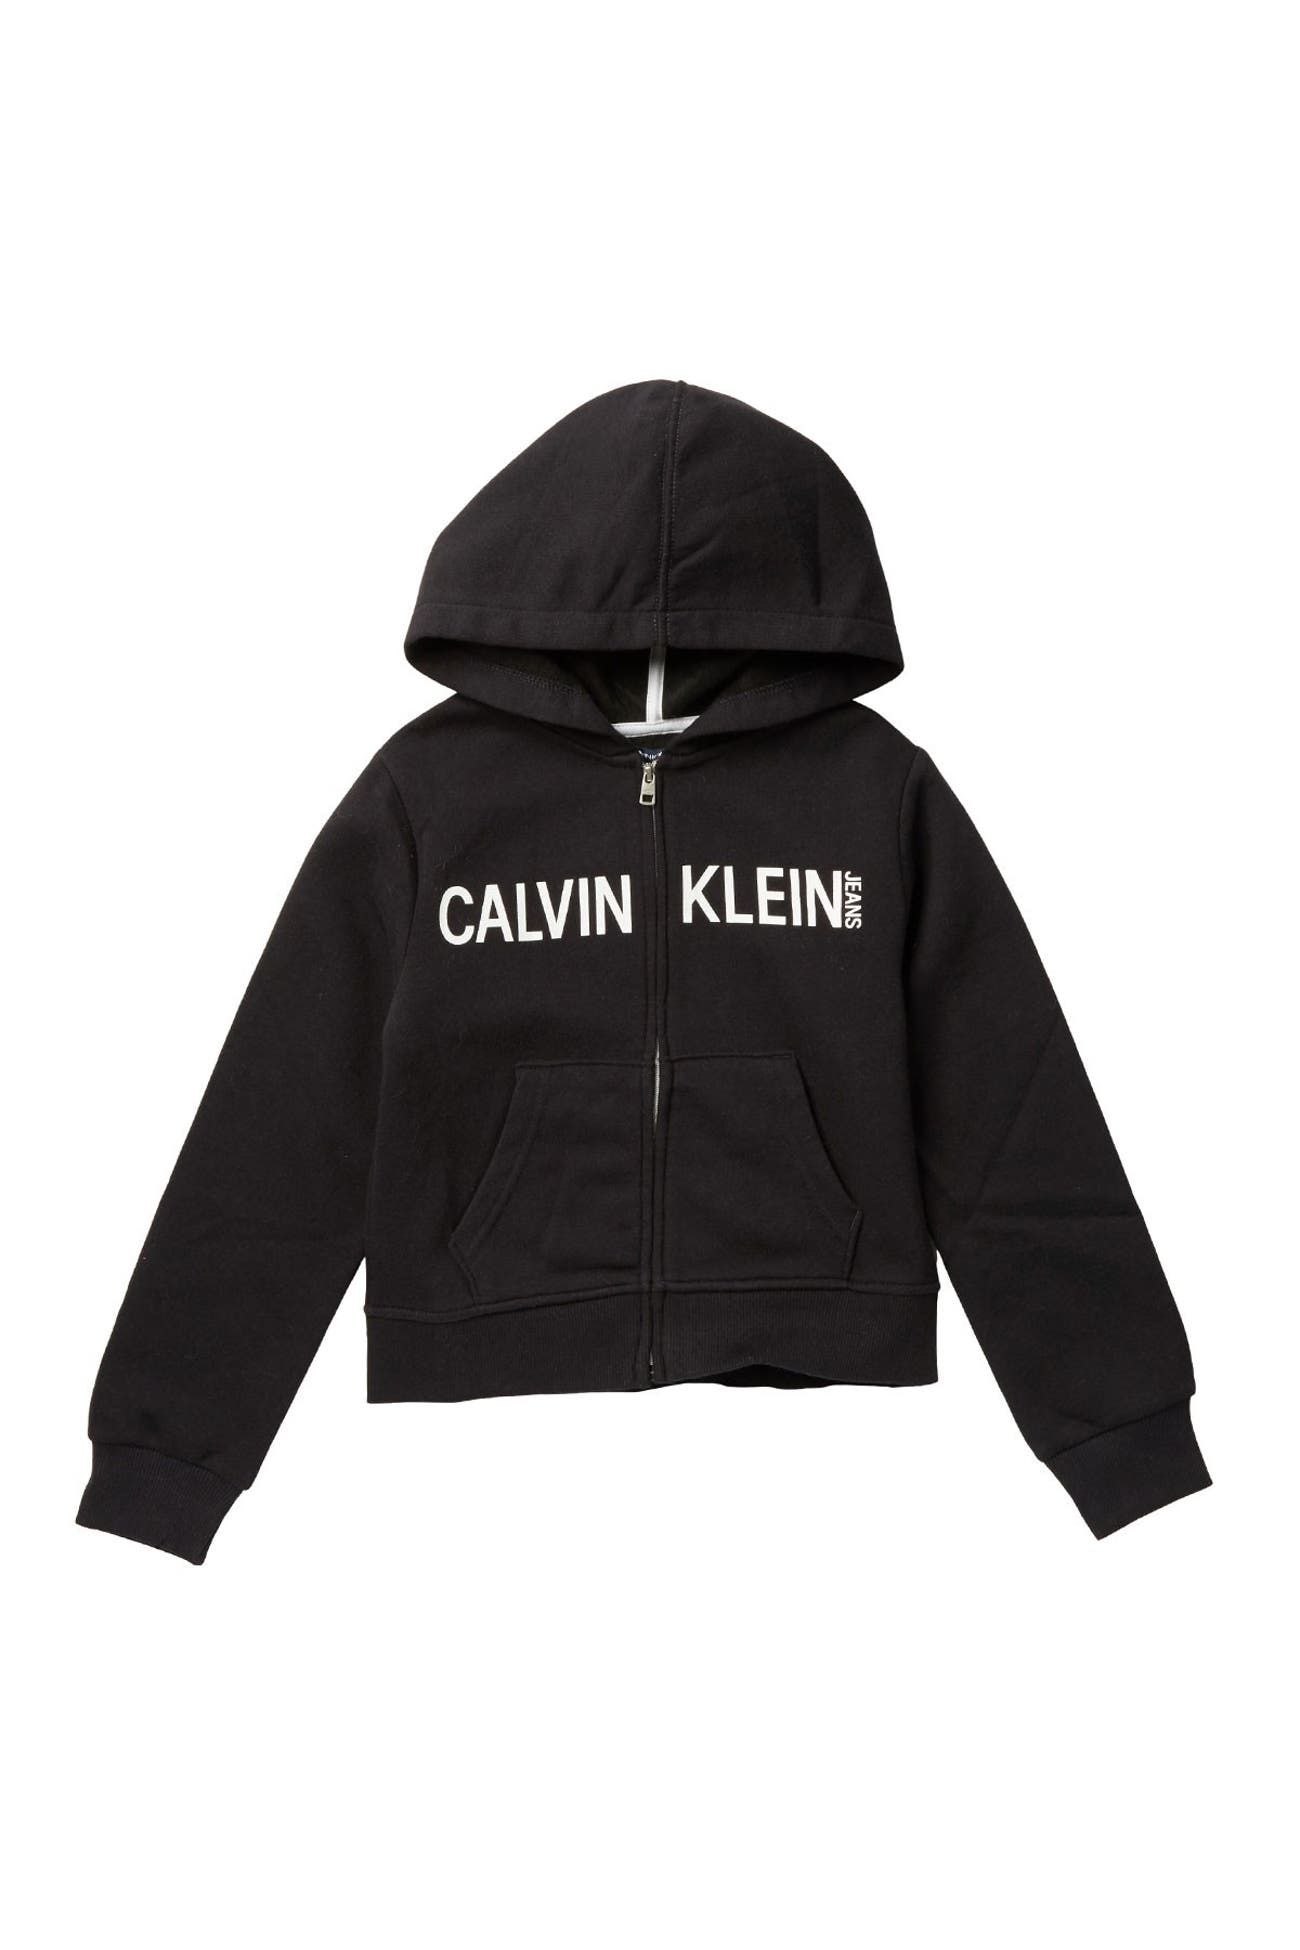 Calvin Klein | CK Logo Zip-Up Hoodie | Nordstrom Rack